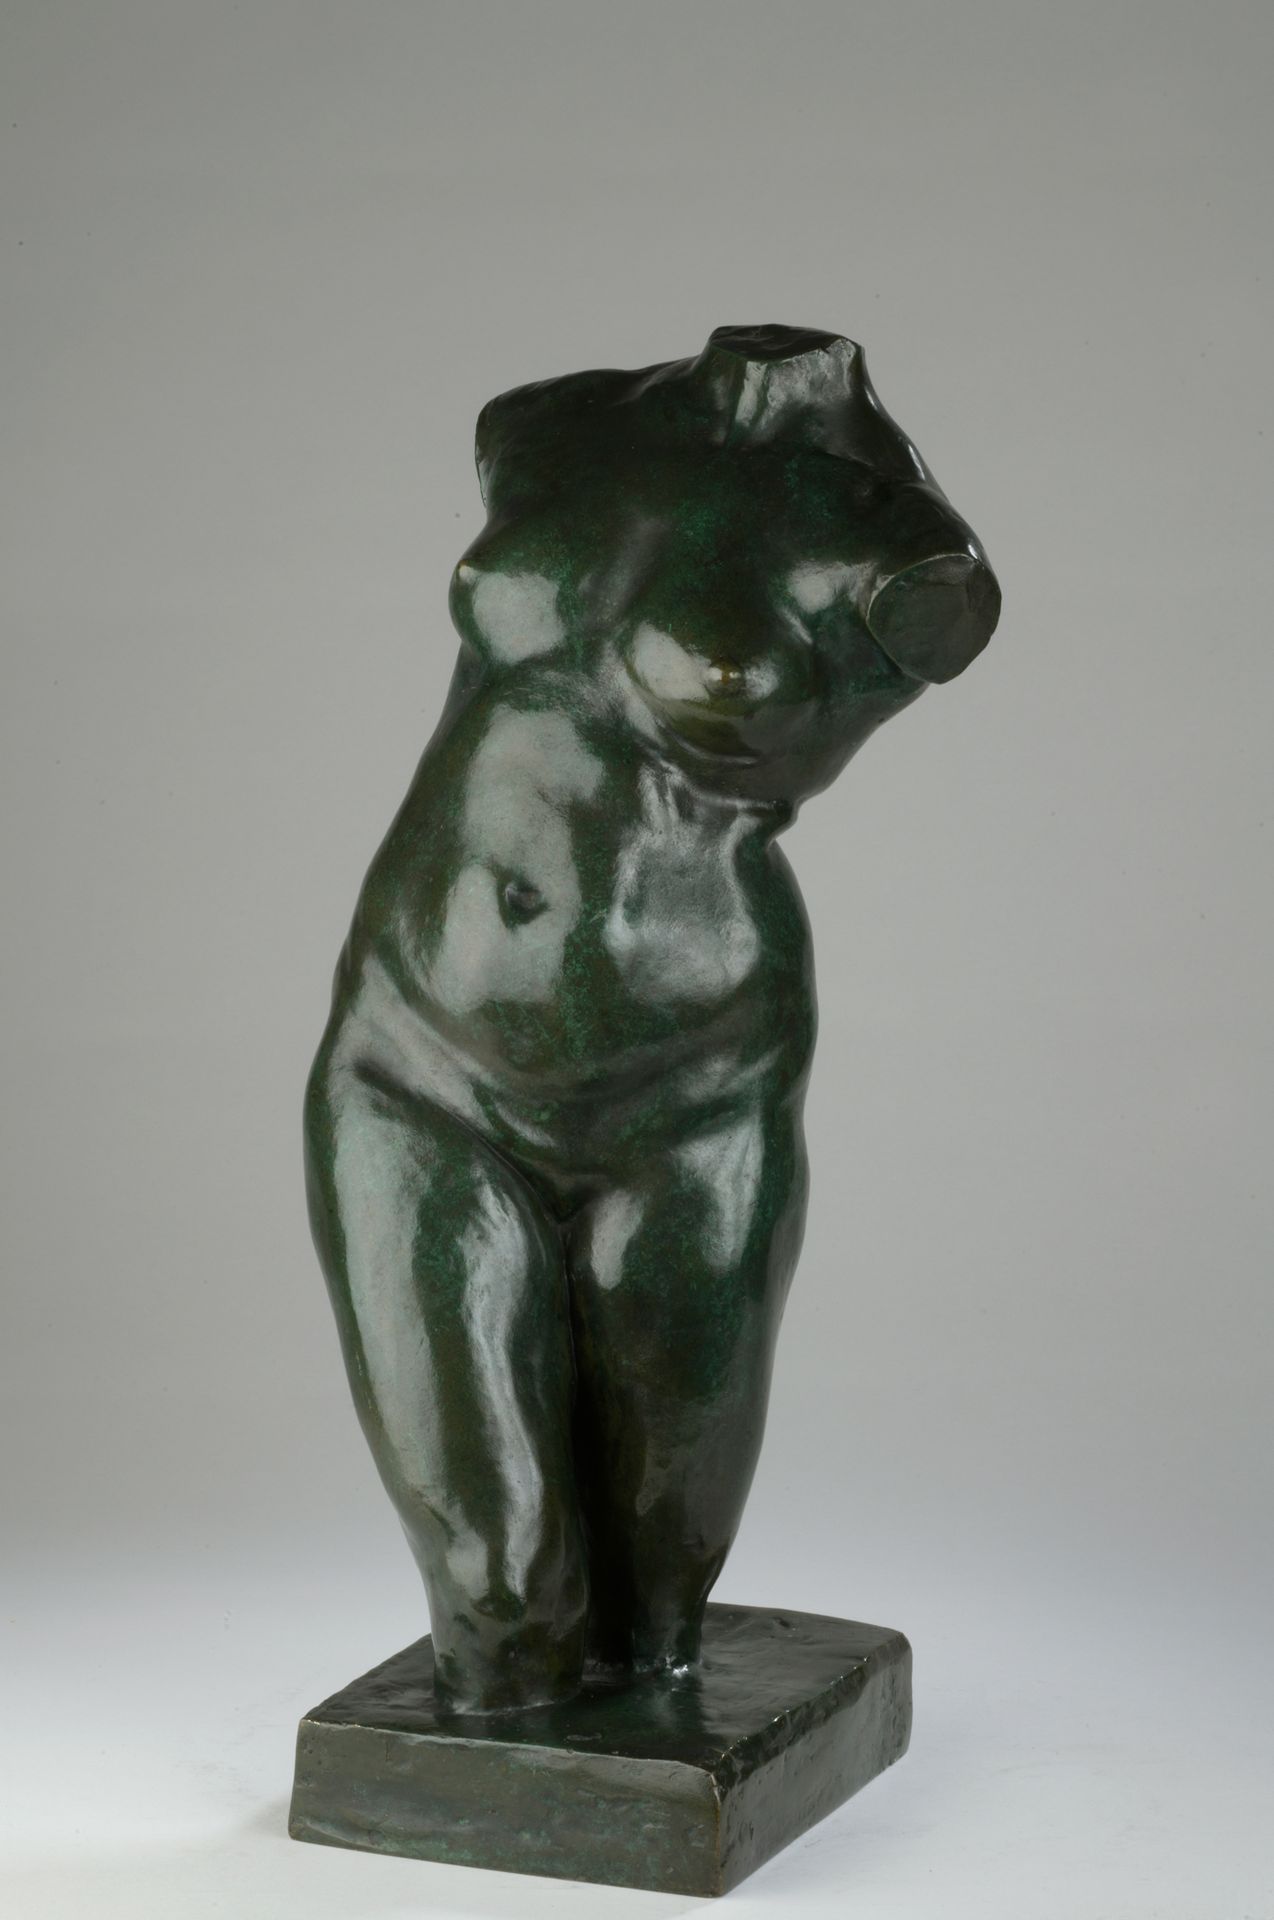 Null 艾梅-儒勒-达鲁(1838-1902)

女性躯干，《共和国的胜利》的研究报告

带有绿色铜锈的青铜器

背面有 "J. DALOU "签名

带有创&hellip;